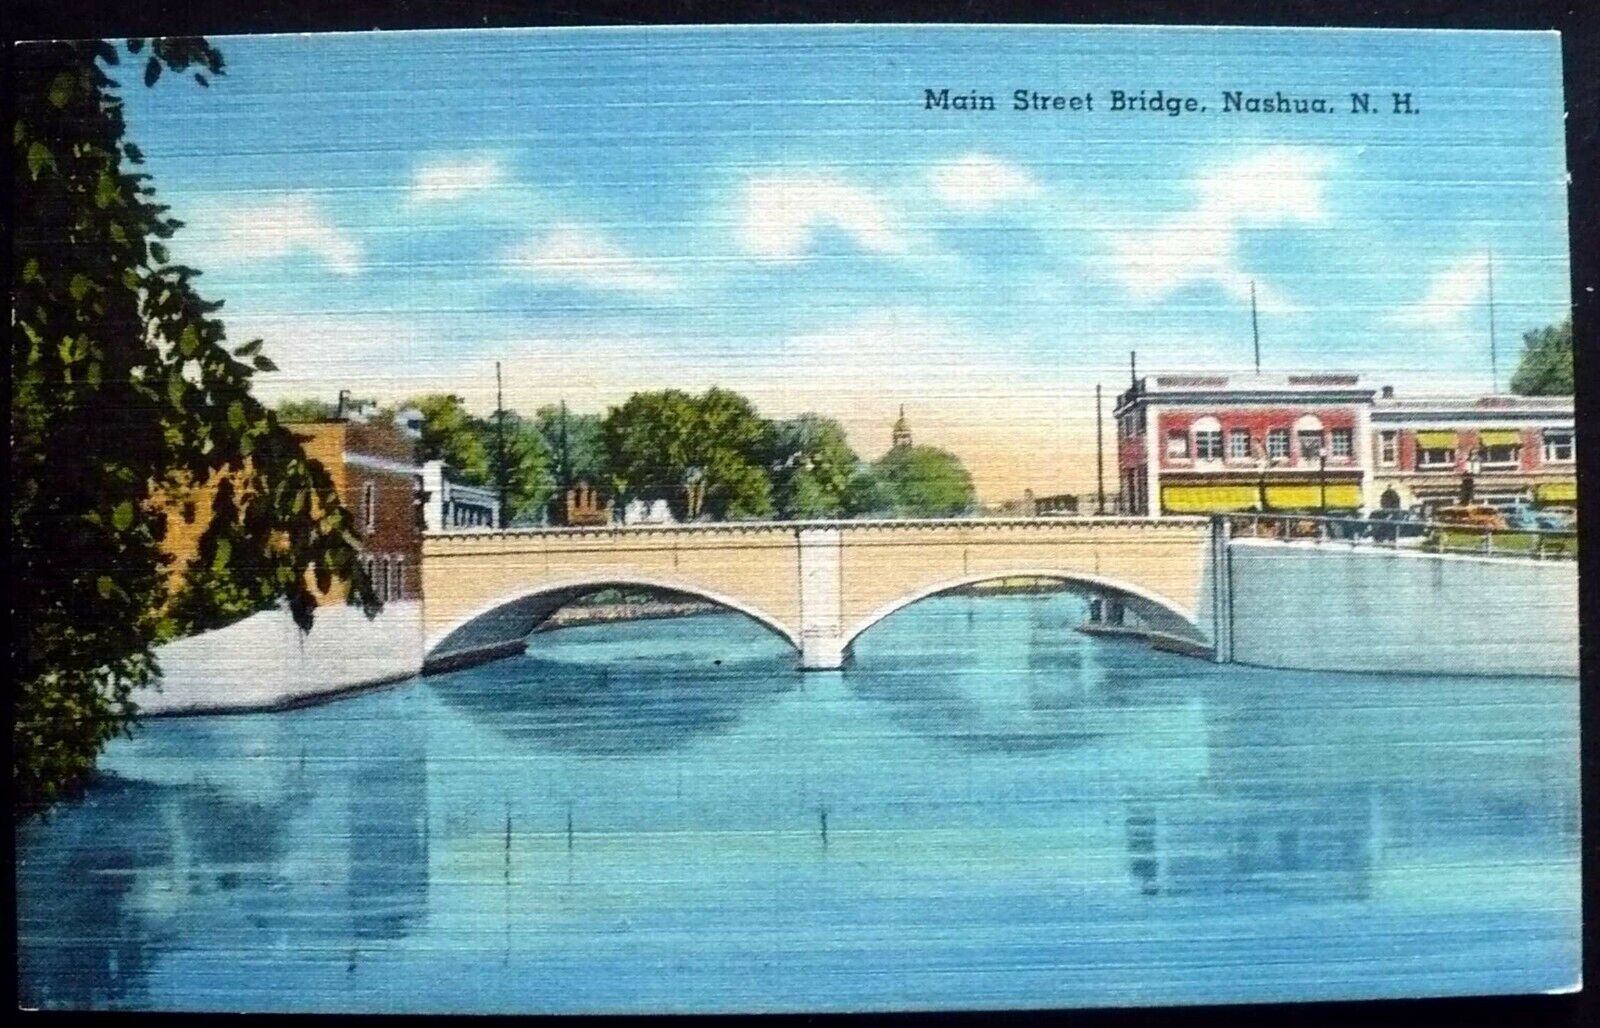 1940s Main Street Bridge, Nashua, New Hampshire